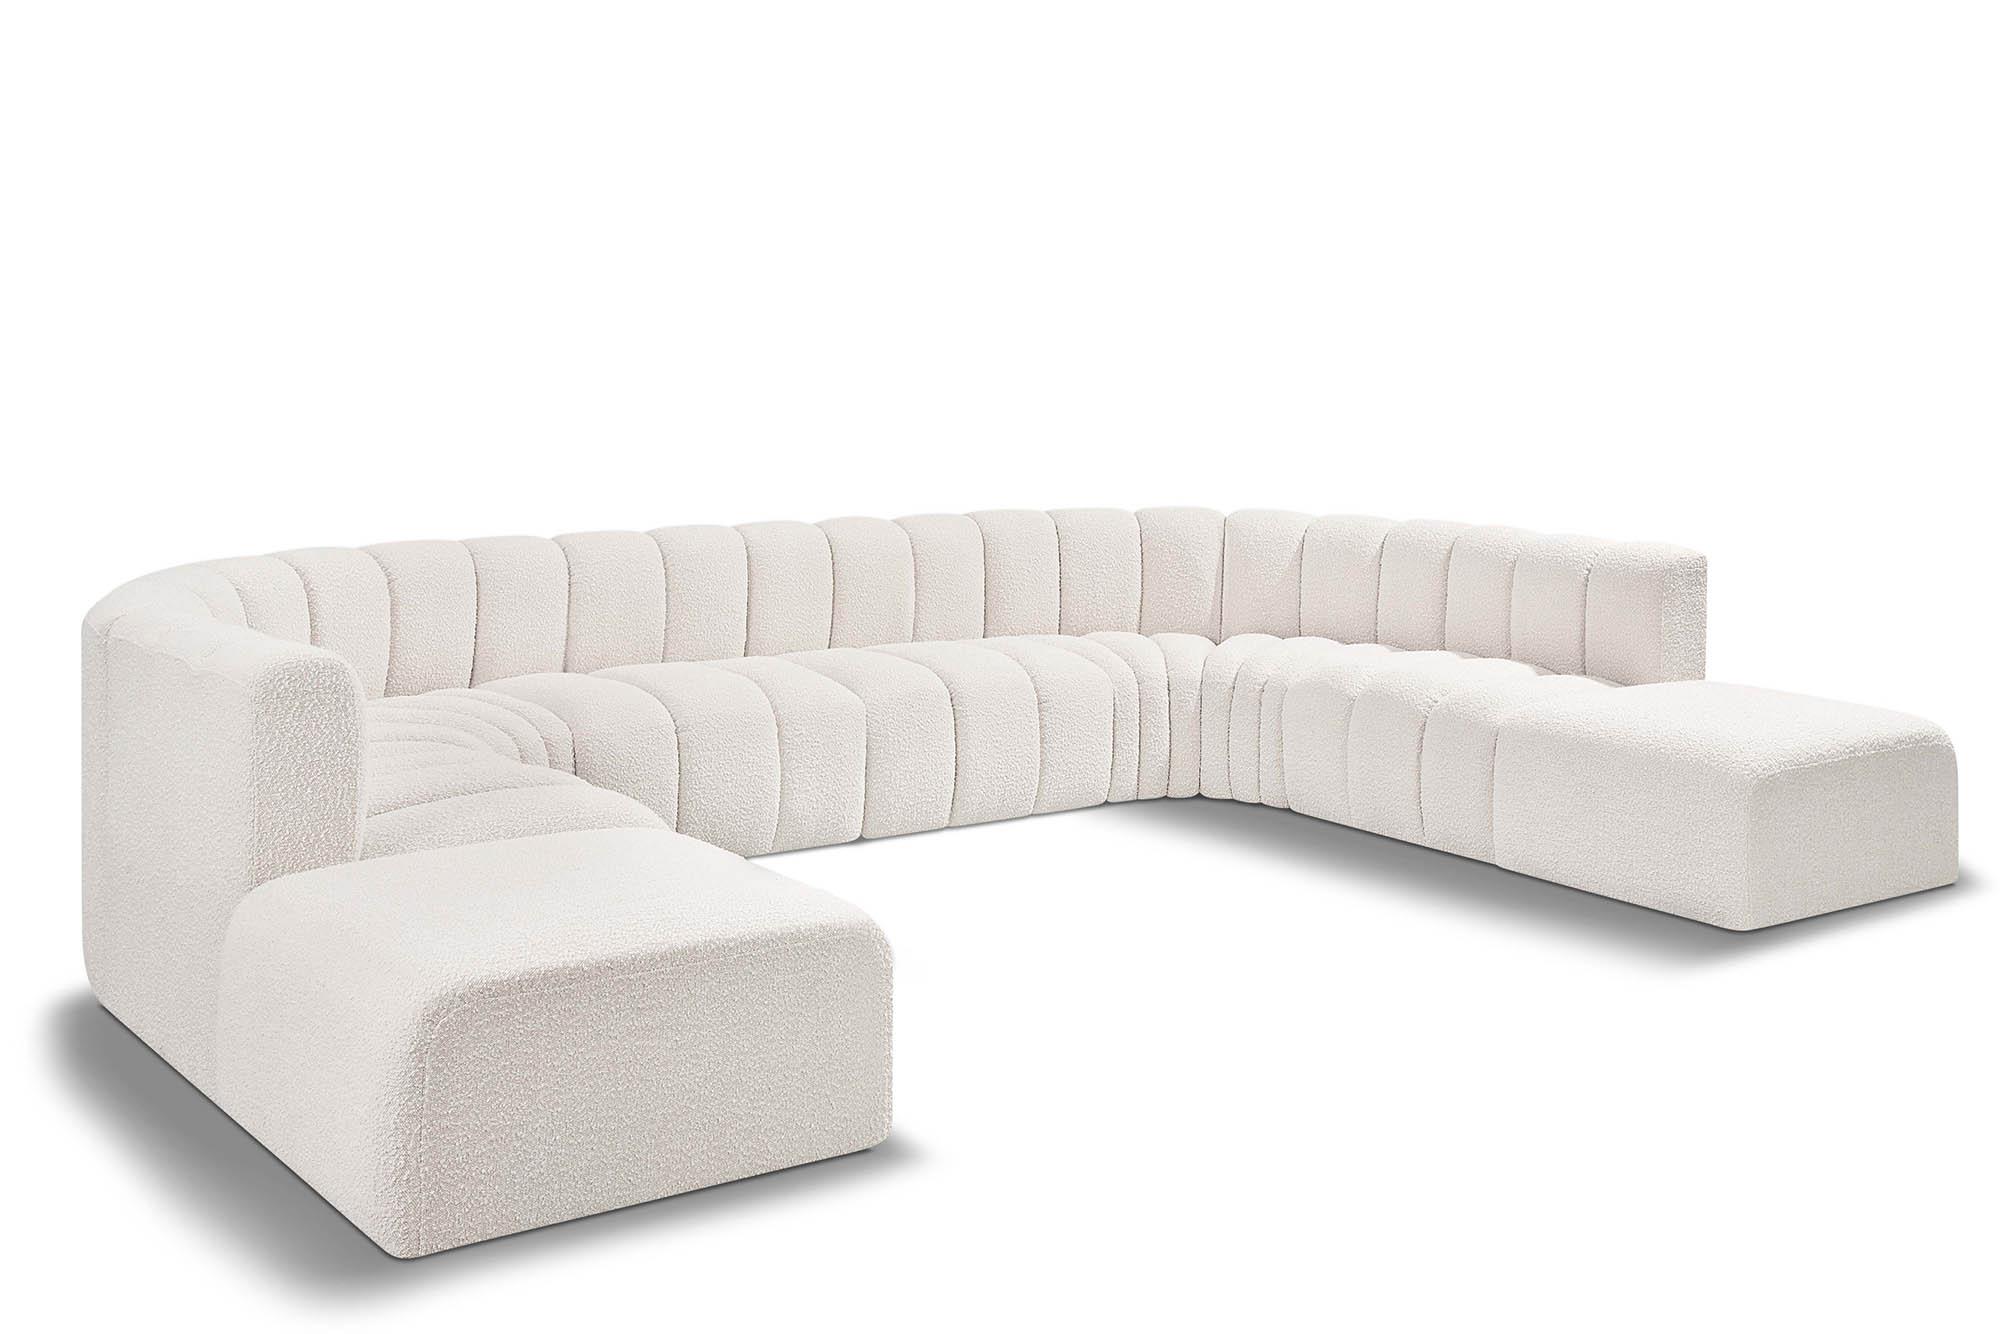 Contemporary, Modern Modular Sectional Sofa ARC 102Cream-S10A 102Cream-S10A in Cream 